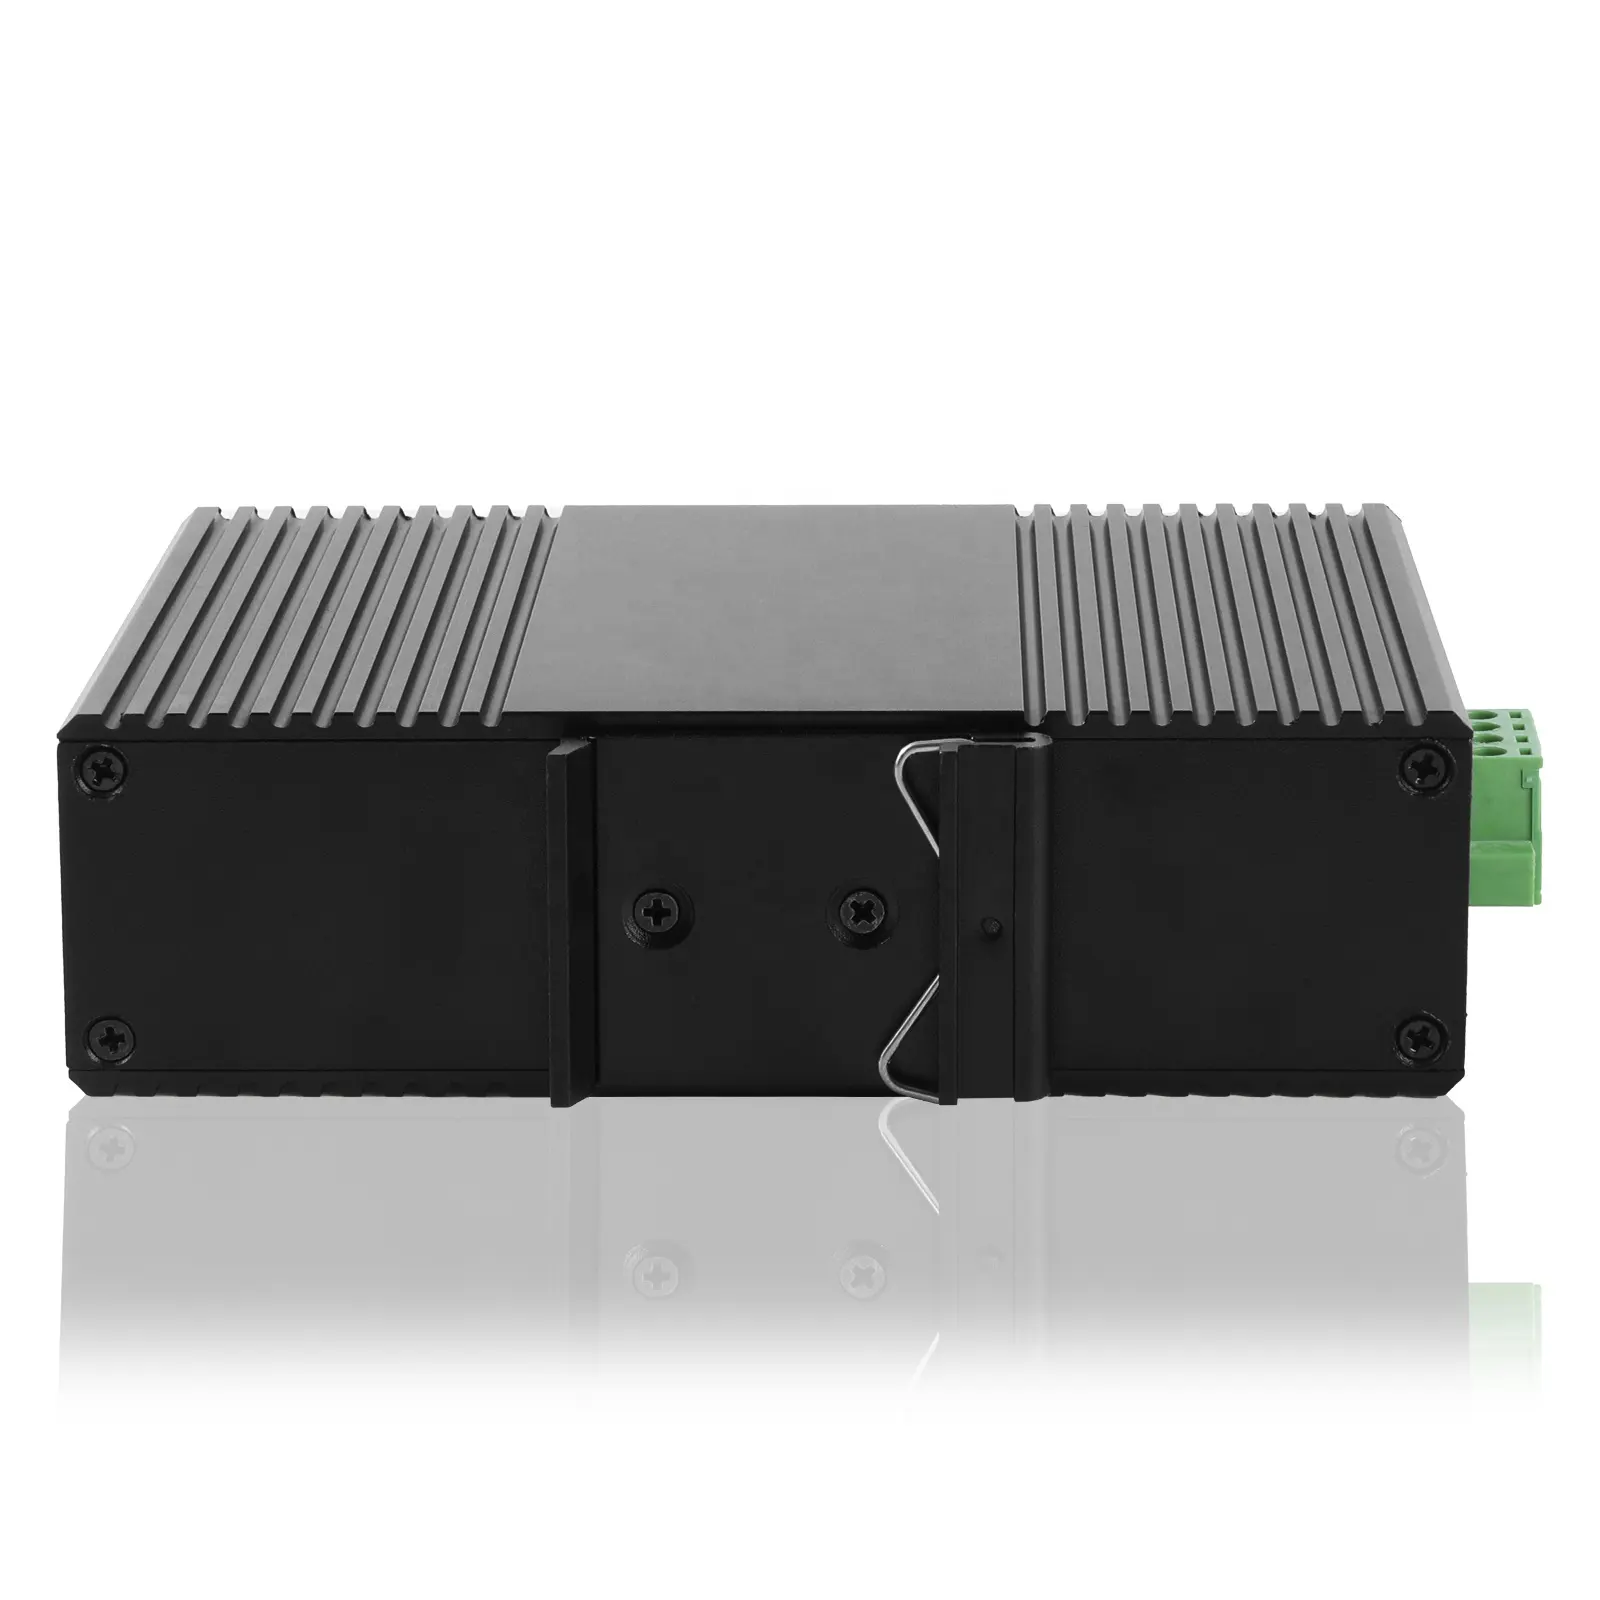 Interruttore Ethernet PoE industriale gestito da 4CH Gigabit L2 2 SFP Uplink DIN Rail ERPS WEB SNMP VLAN CLI PoE interruttore di rete per esterni